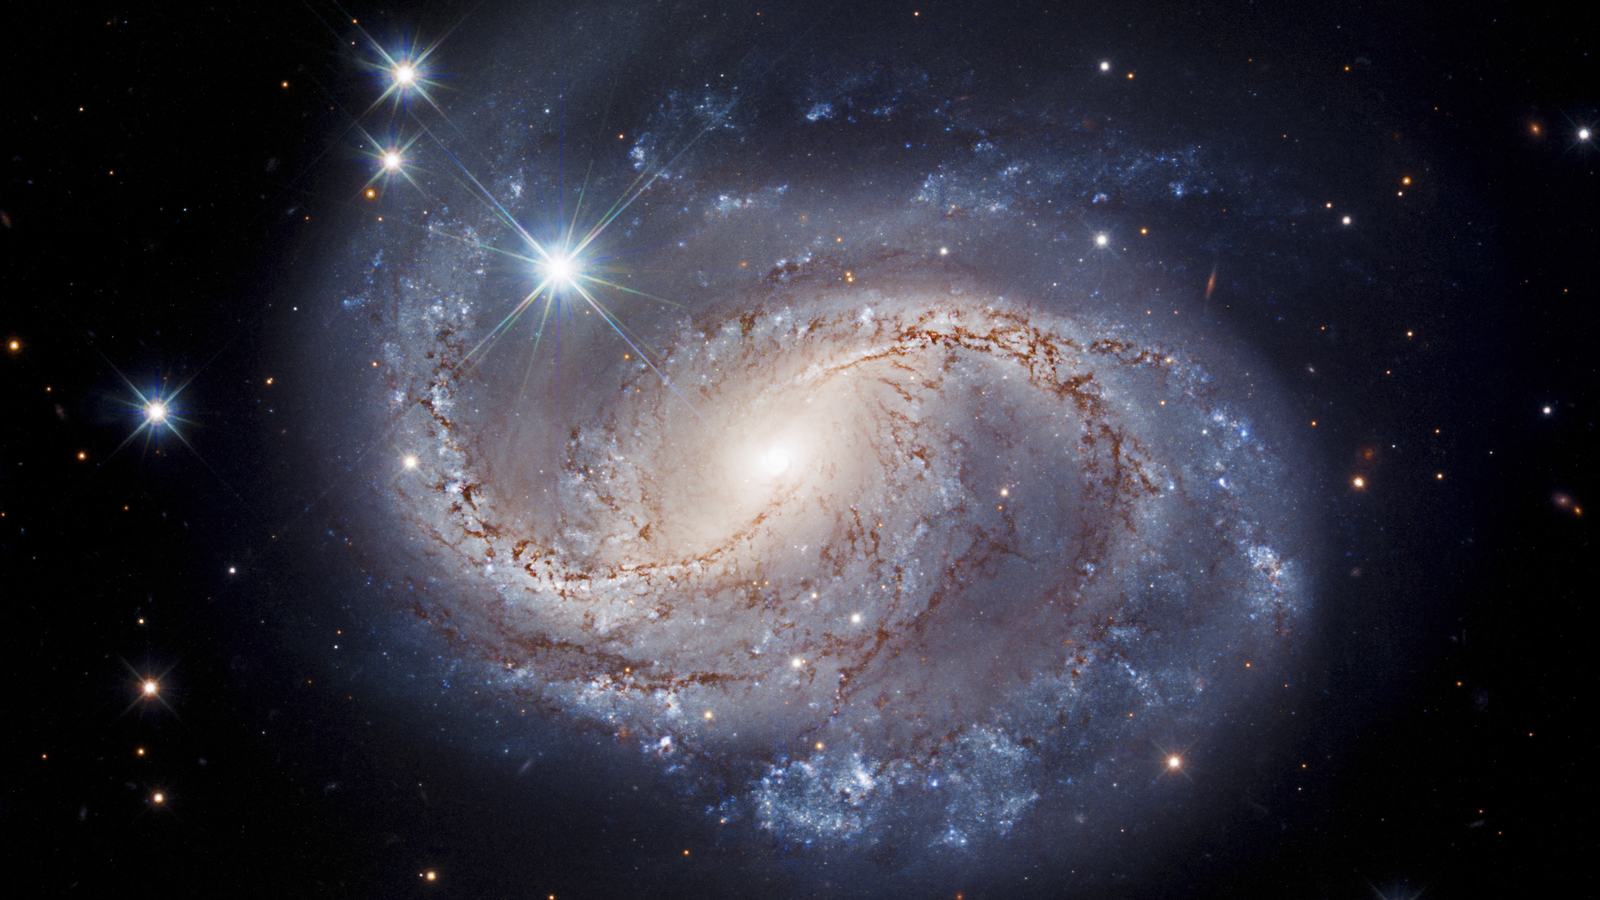 Das Hubble-Weltraumteleskop macht ein strahlendes Bild einer vergitterten Spiralgalaxie